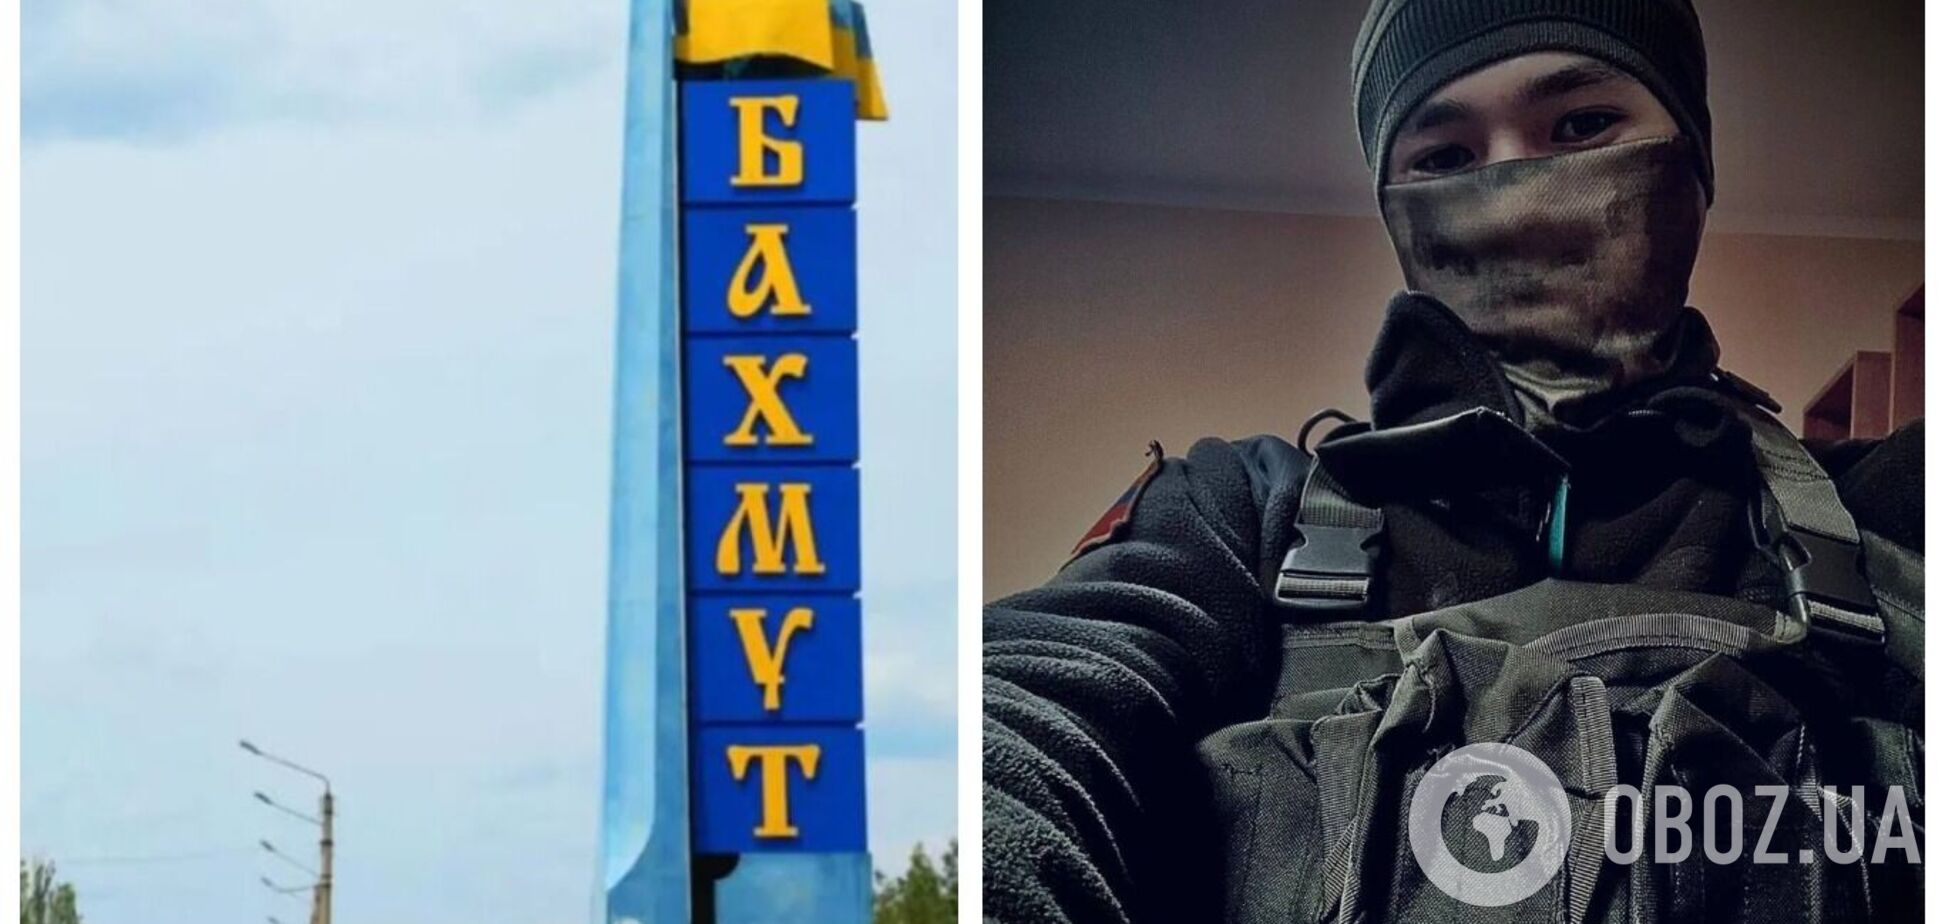 В районе Бахмута ликвидировали коллаборанта, который стал 'звездой' на росТВ: он разбил на видео герб Украины. Фото